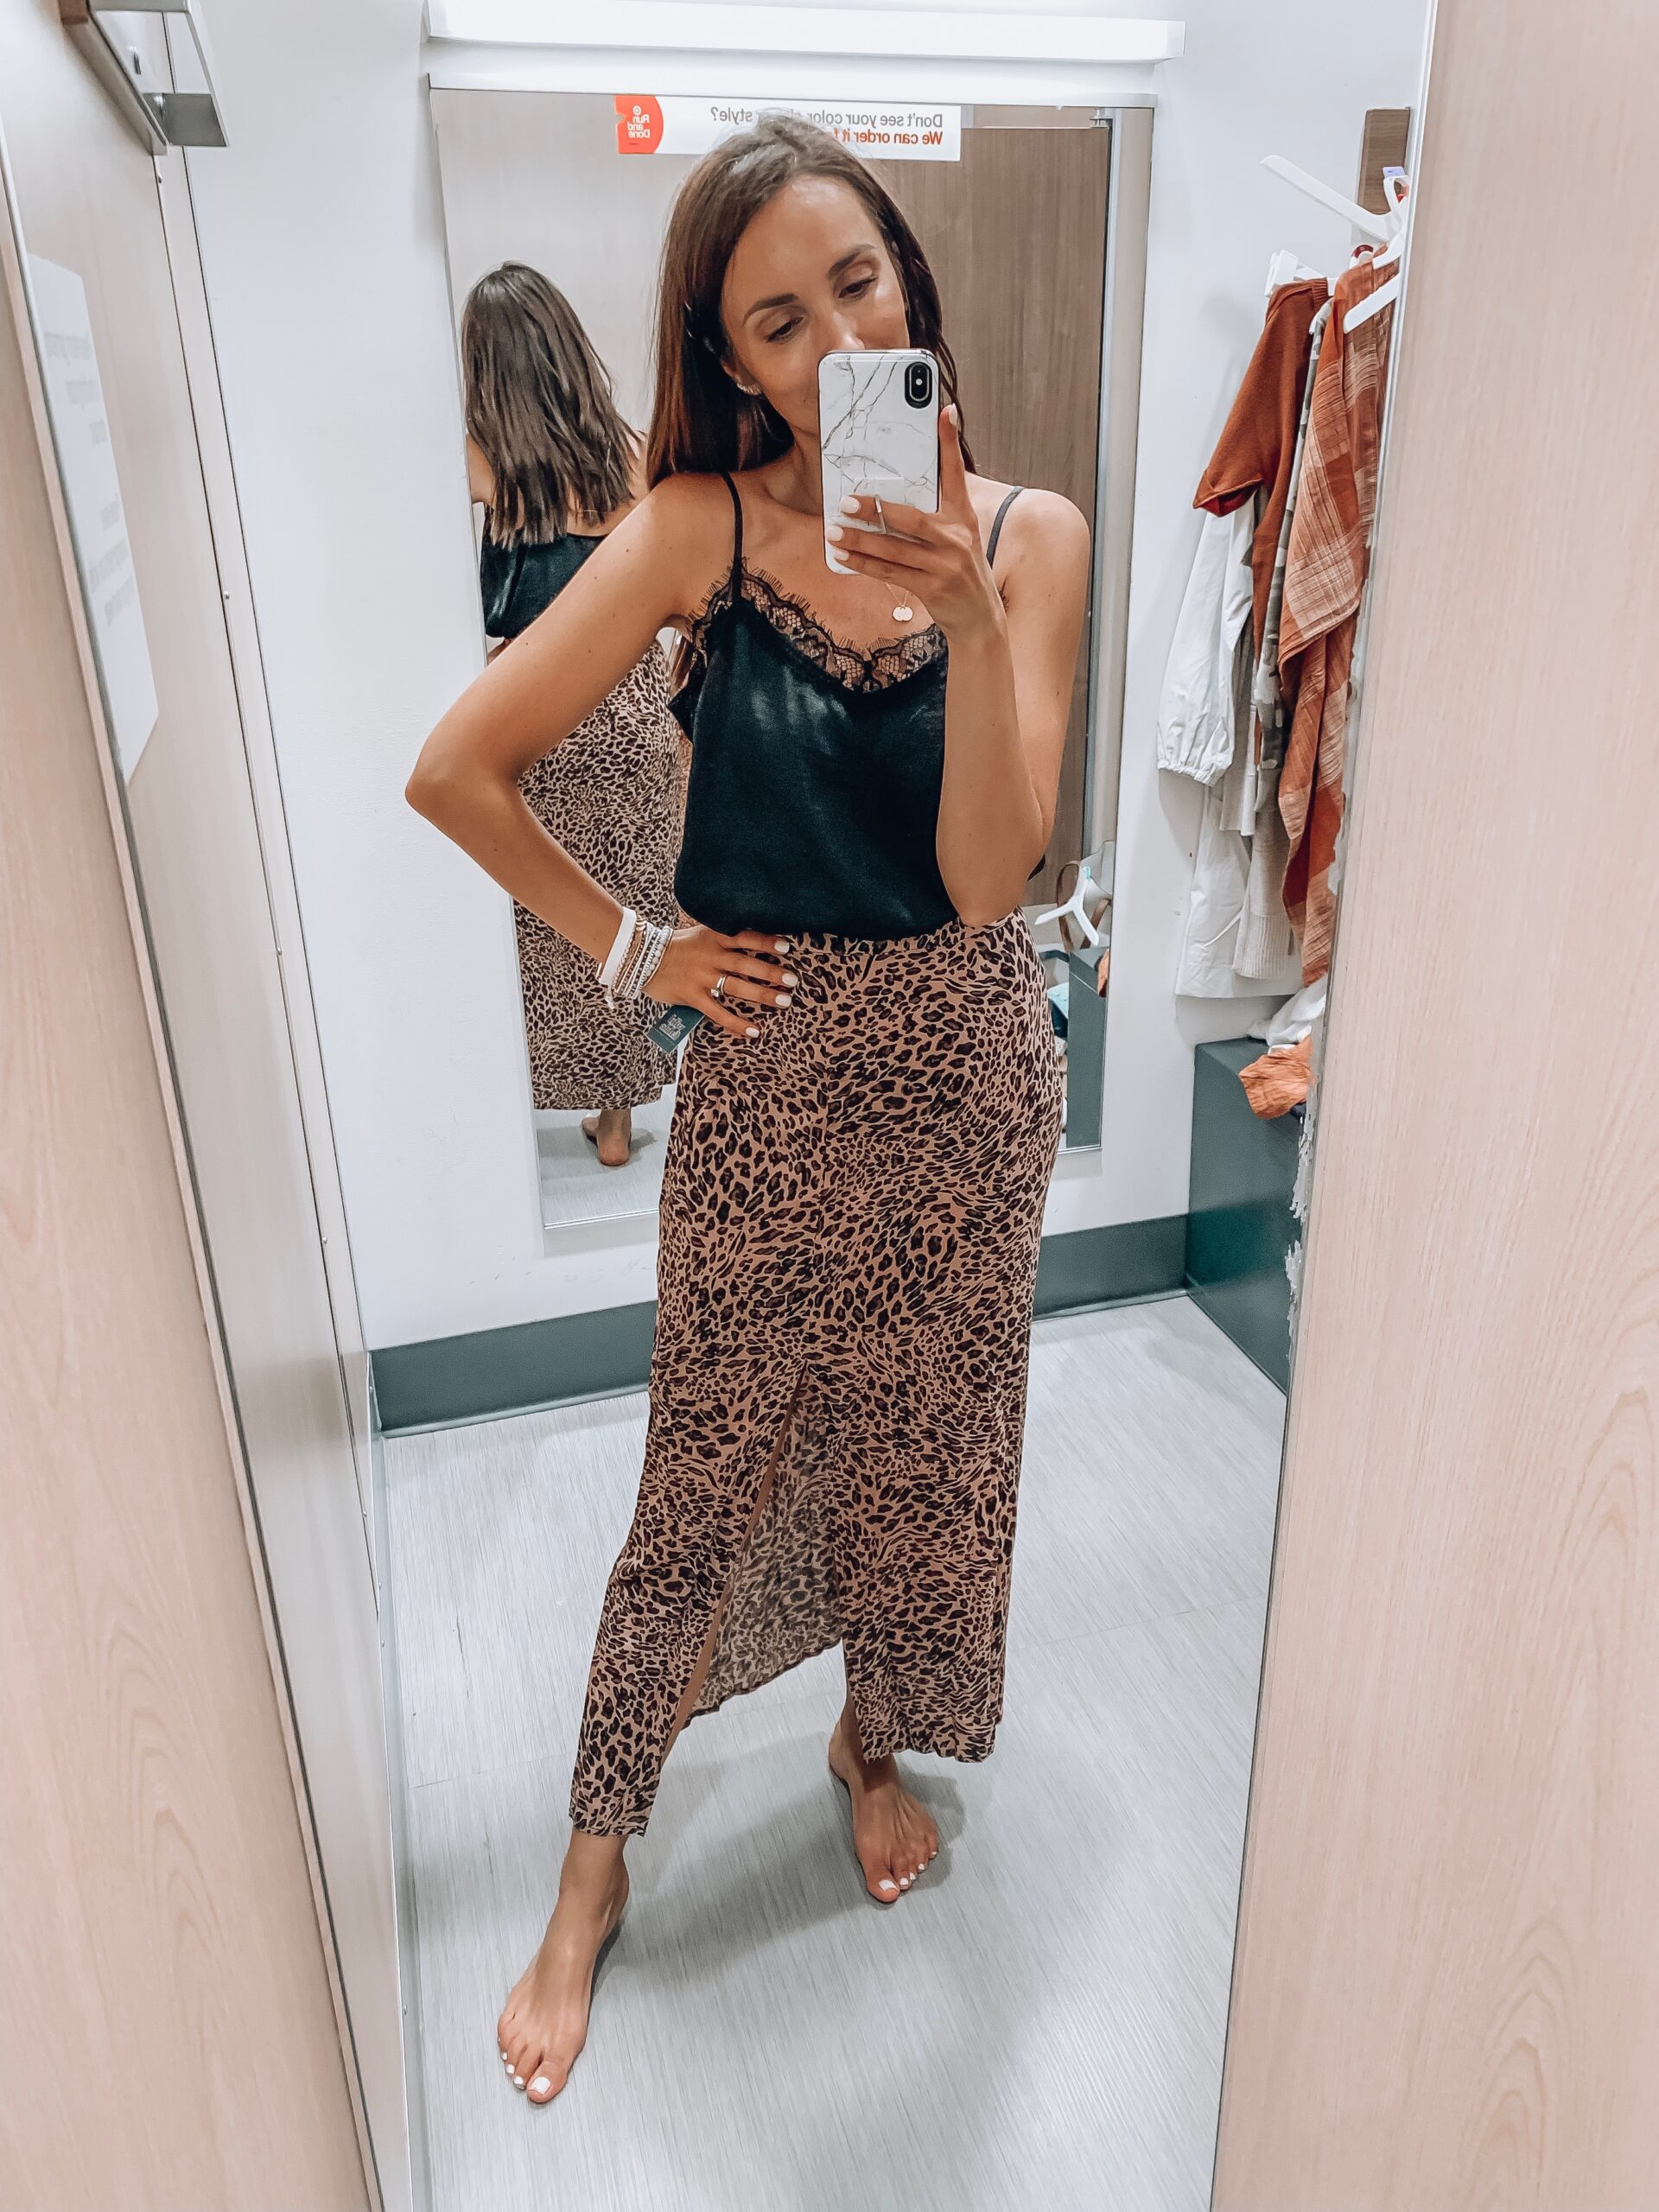 Leopard Skirt form Target, Black Cami from Target